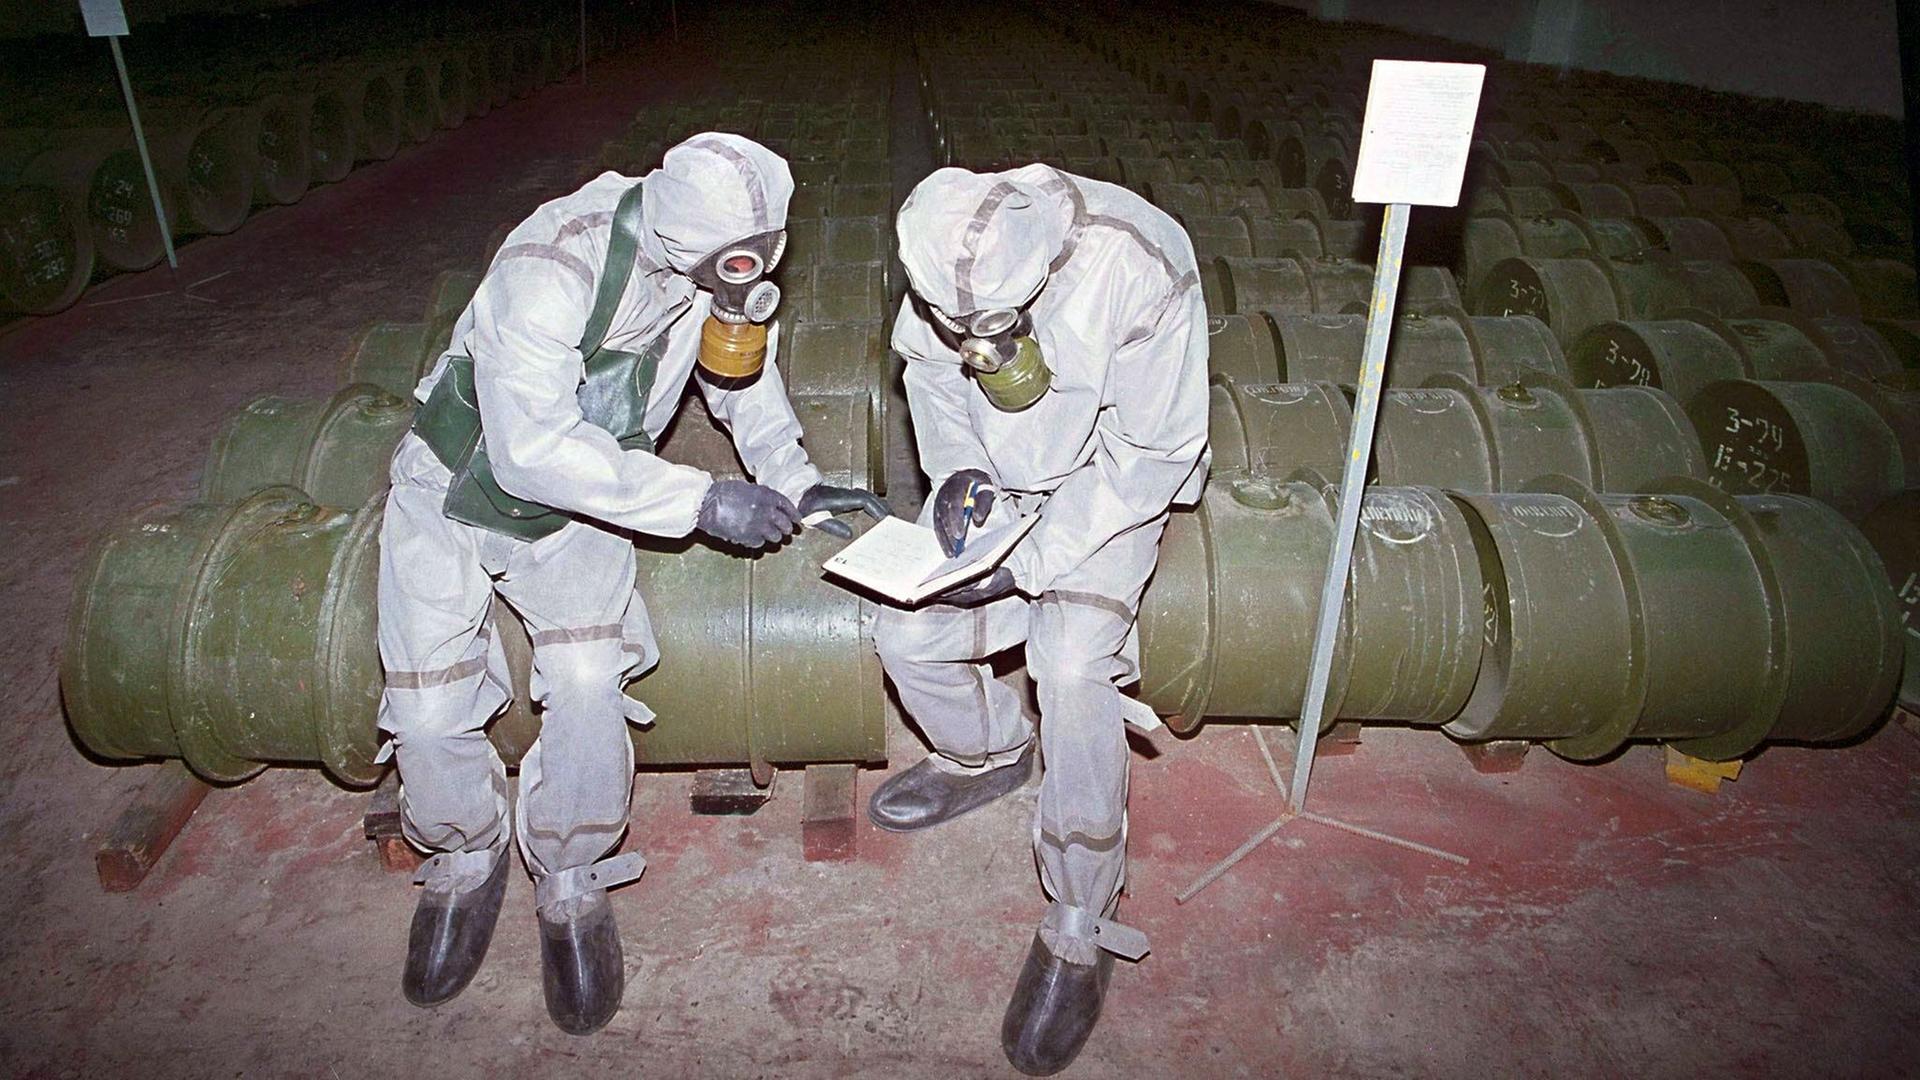 Chemiewaffen in Russland - Senfgas